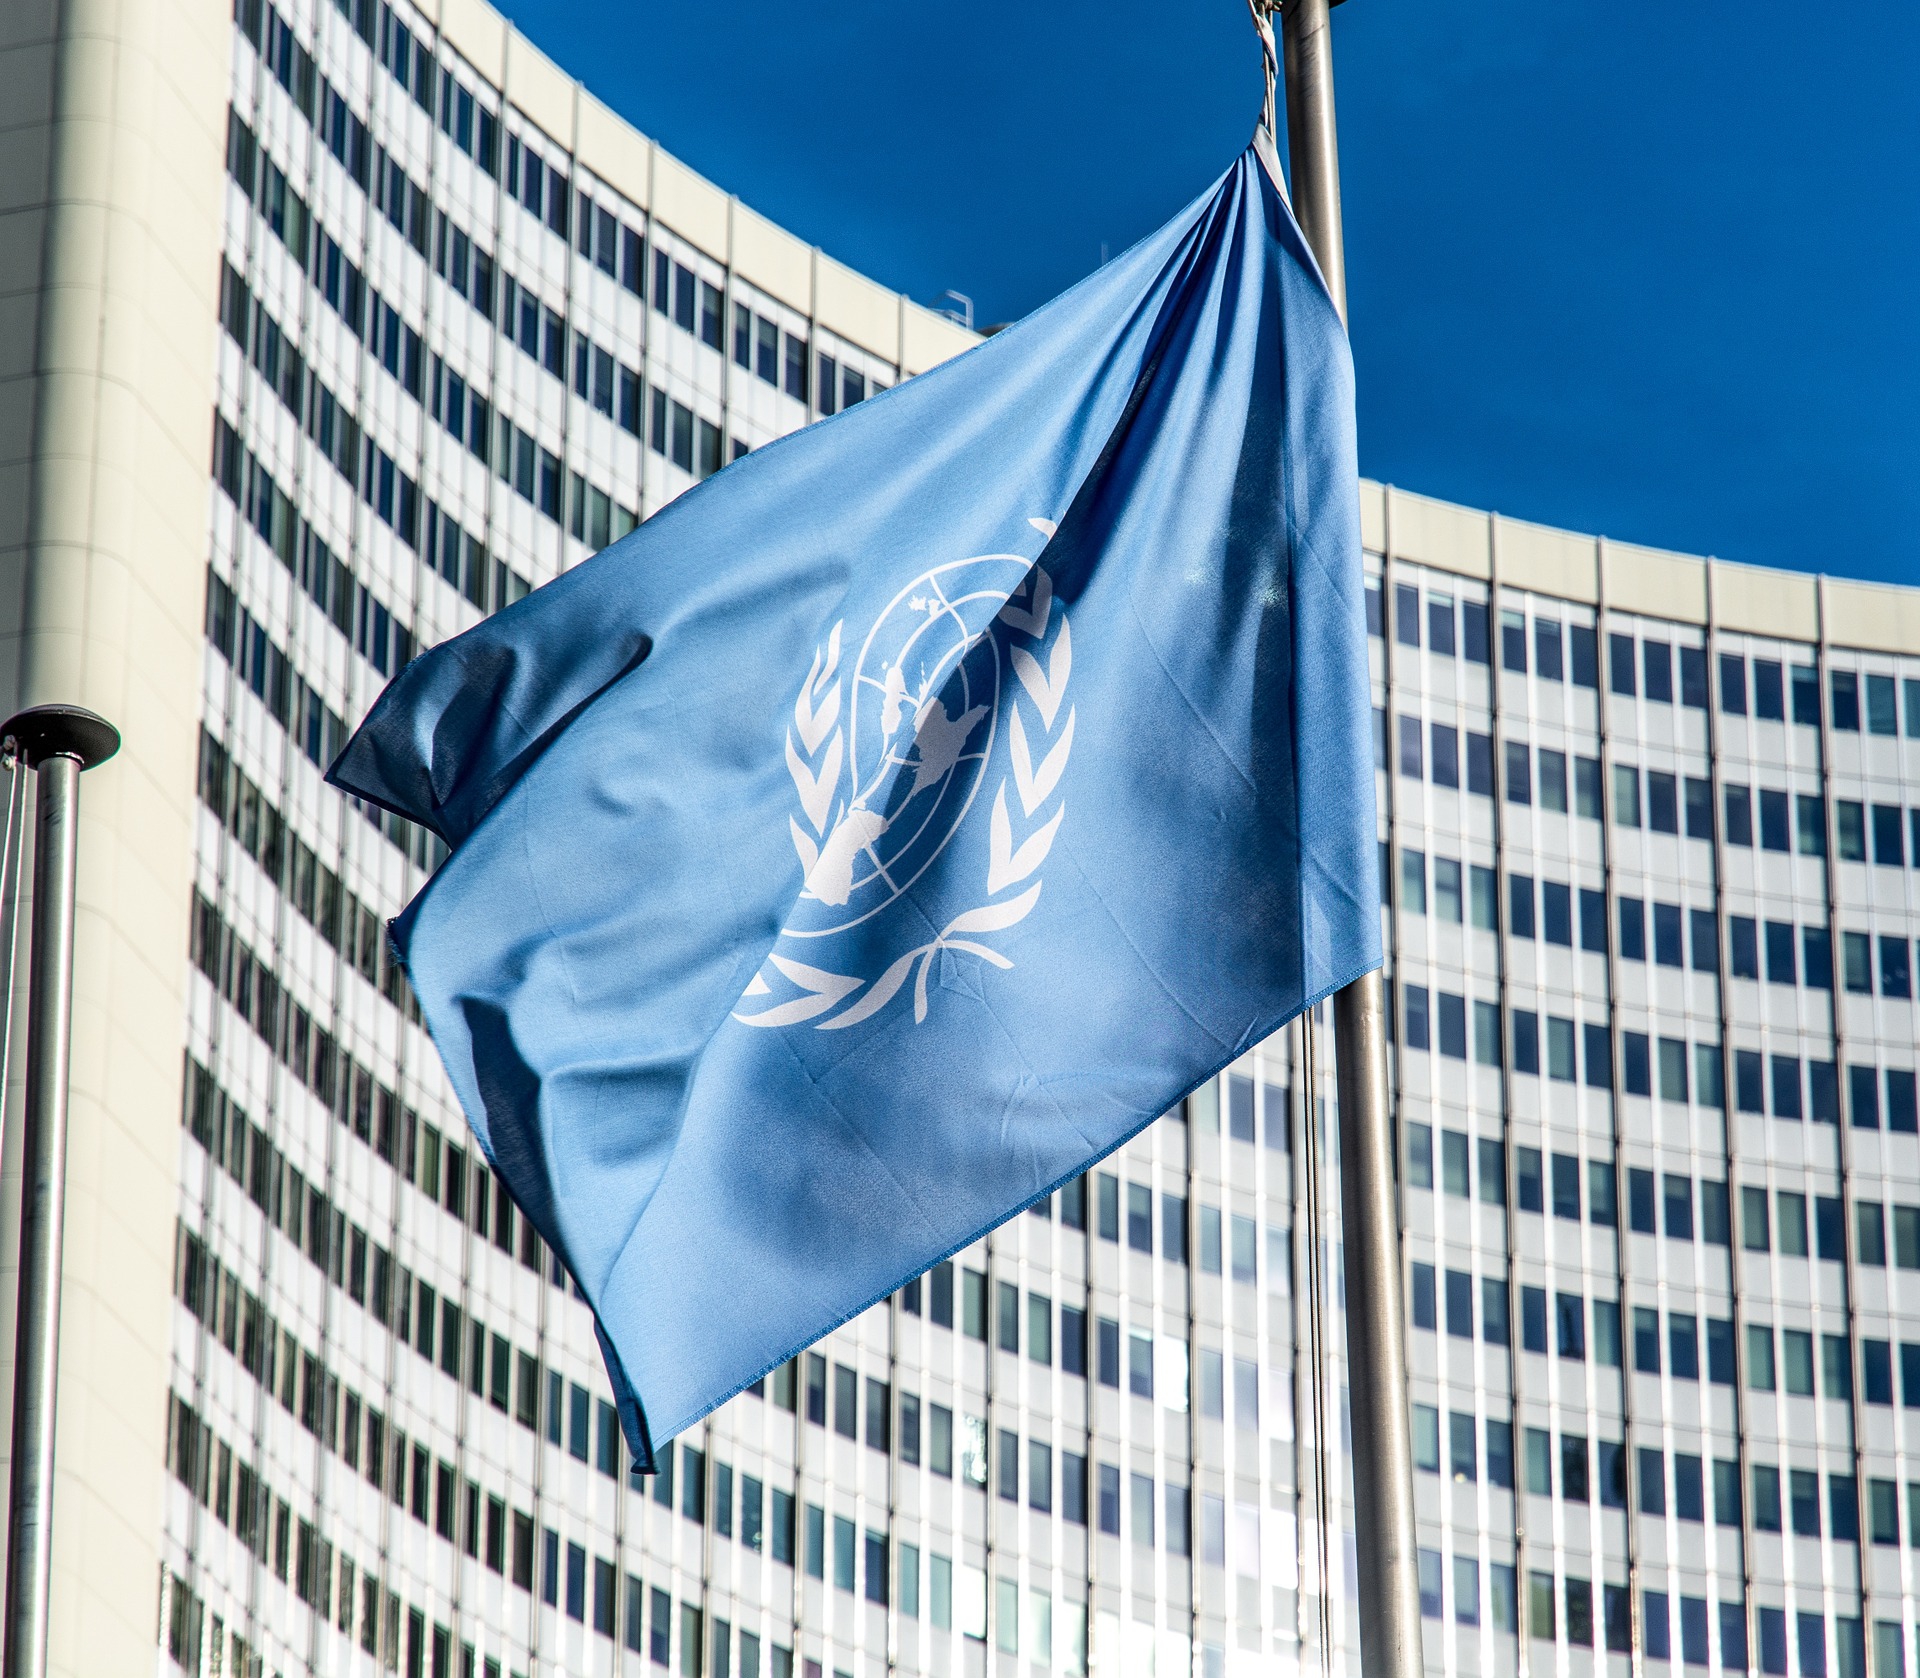 ООН попал в скандал с сексуальным домогательством  - фото 1